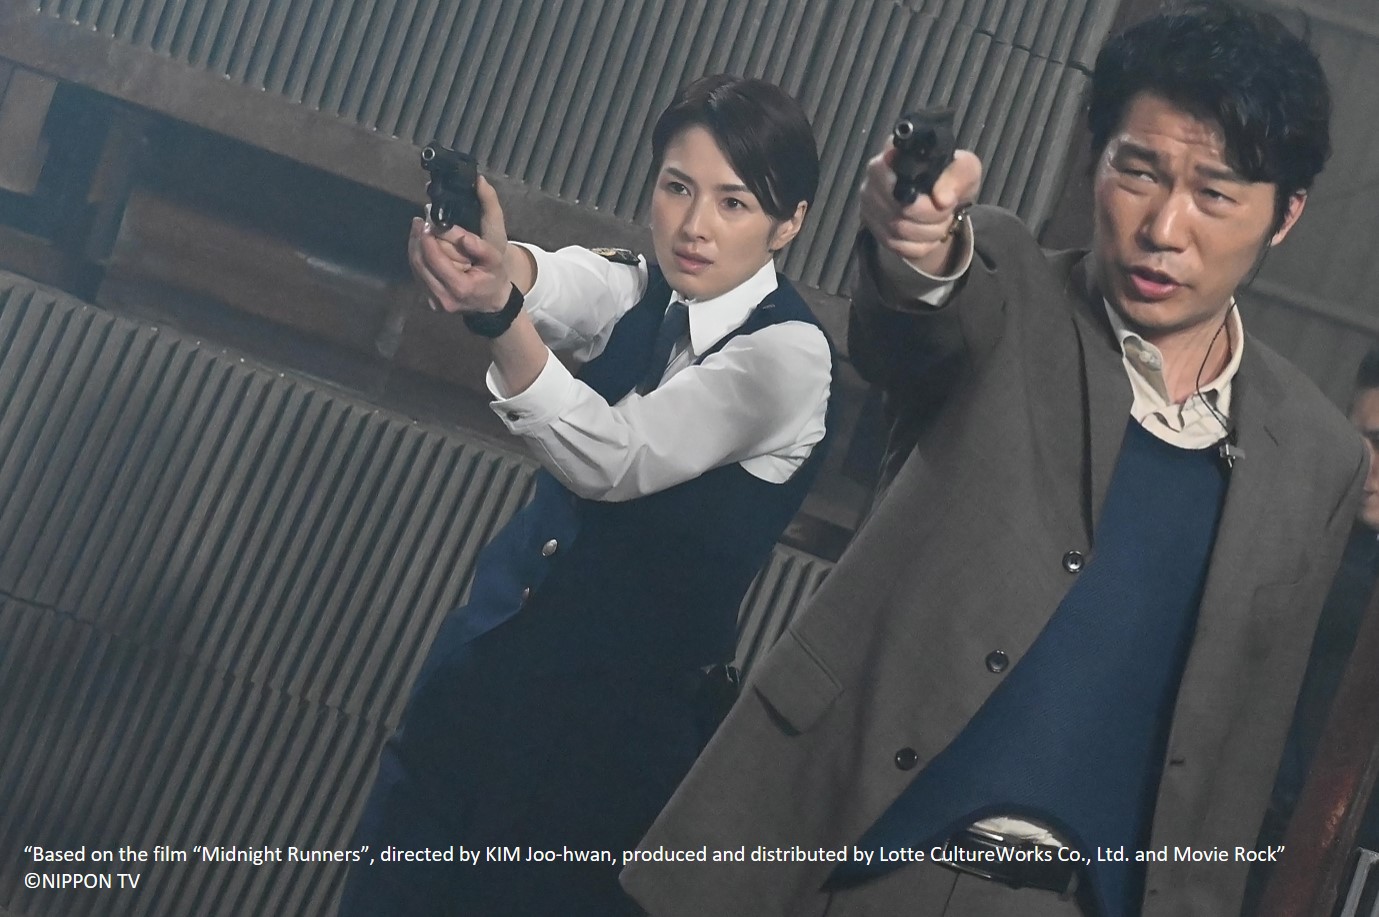 คุยกับ “เคนโตะ นากาจิมะ” และ “โช ฮิราโนะ” กับบทนักเรียนนายร้อยตำรวจใน “Detective Novice”